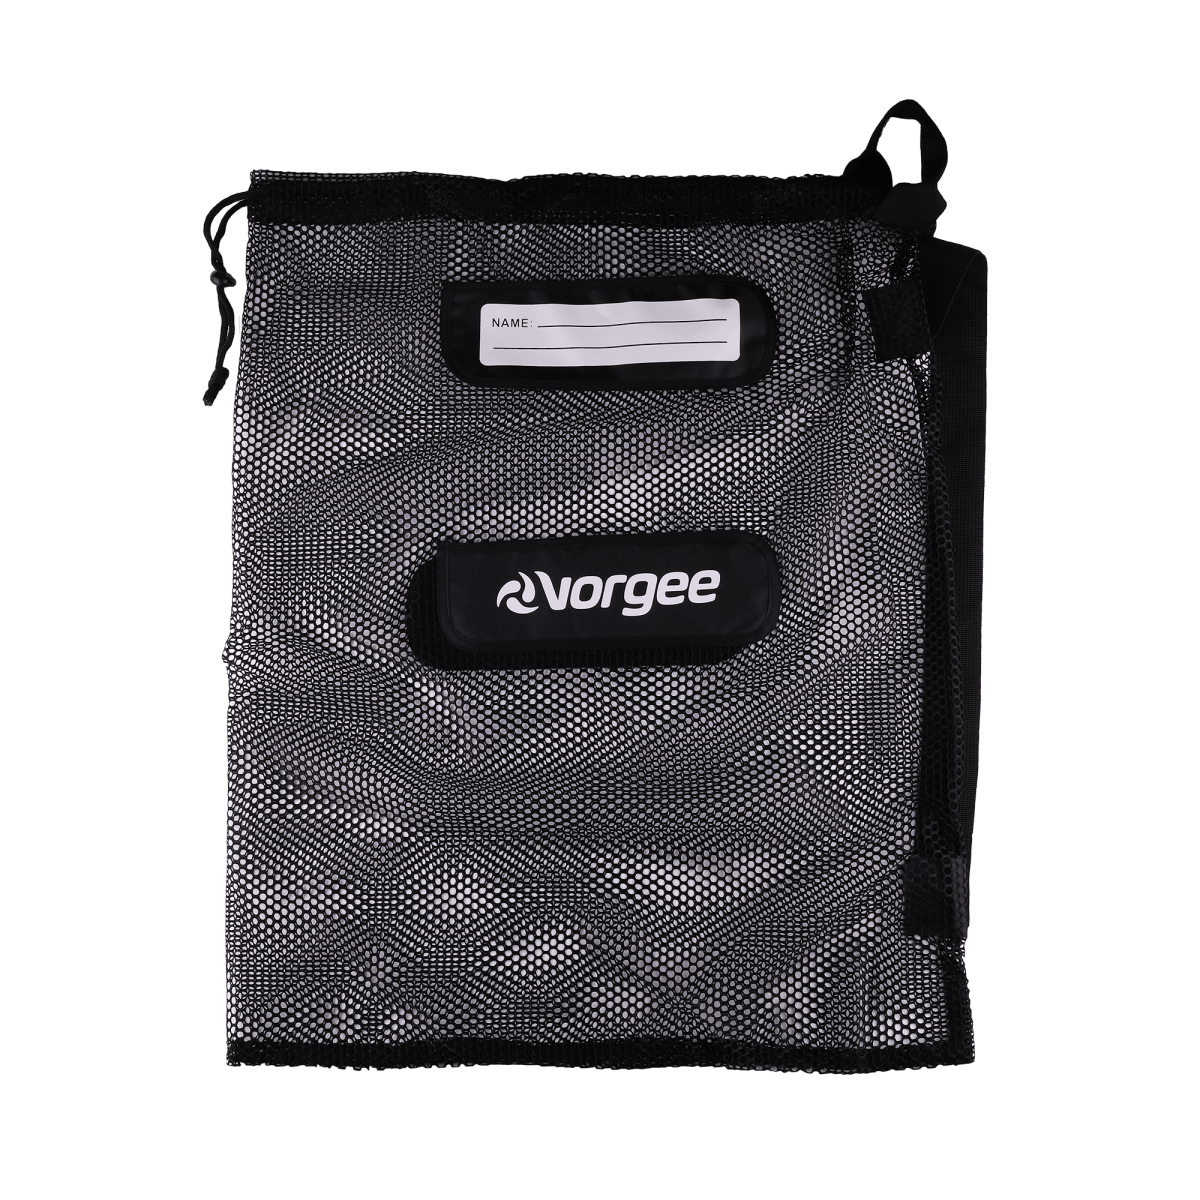 Vorgee Mesh Swim Equipment Bag by Vorgee - Ocean Junction